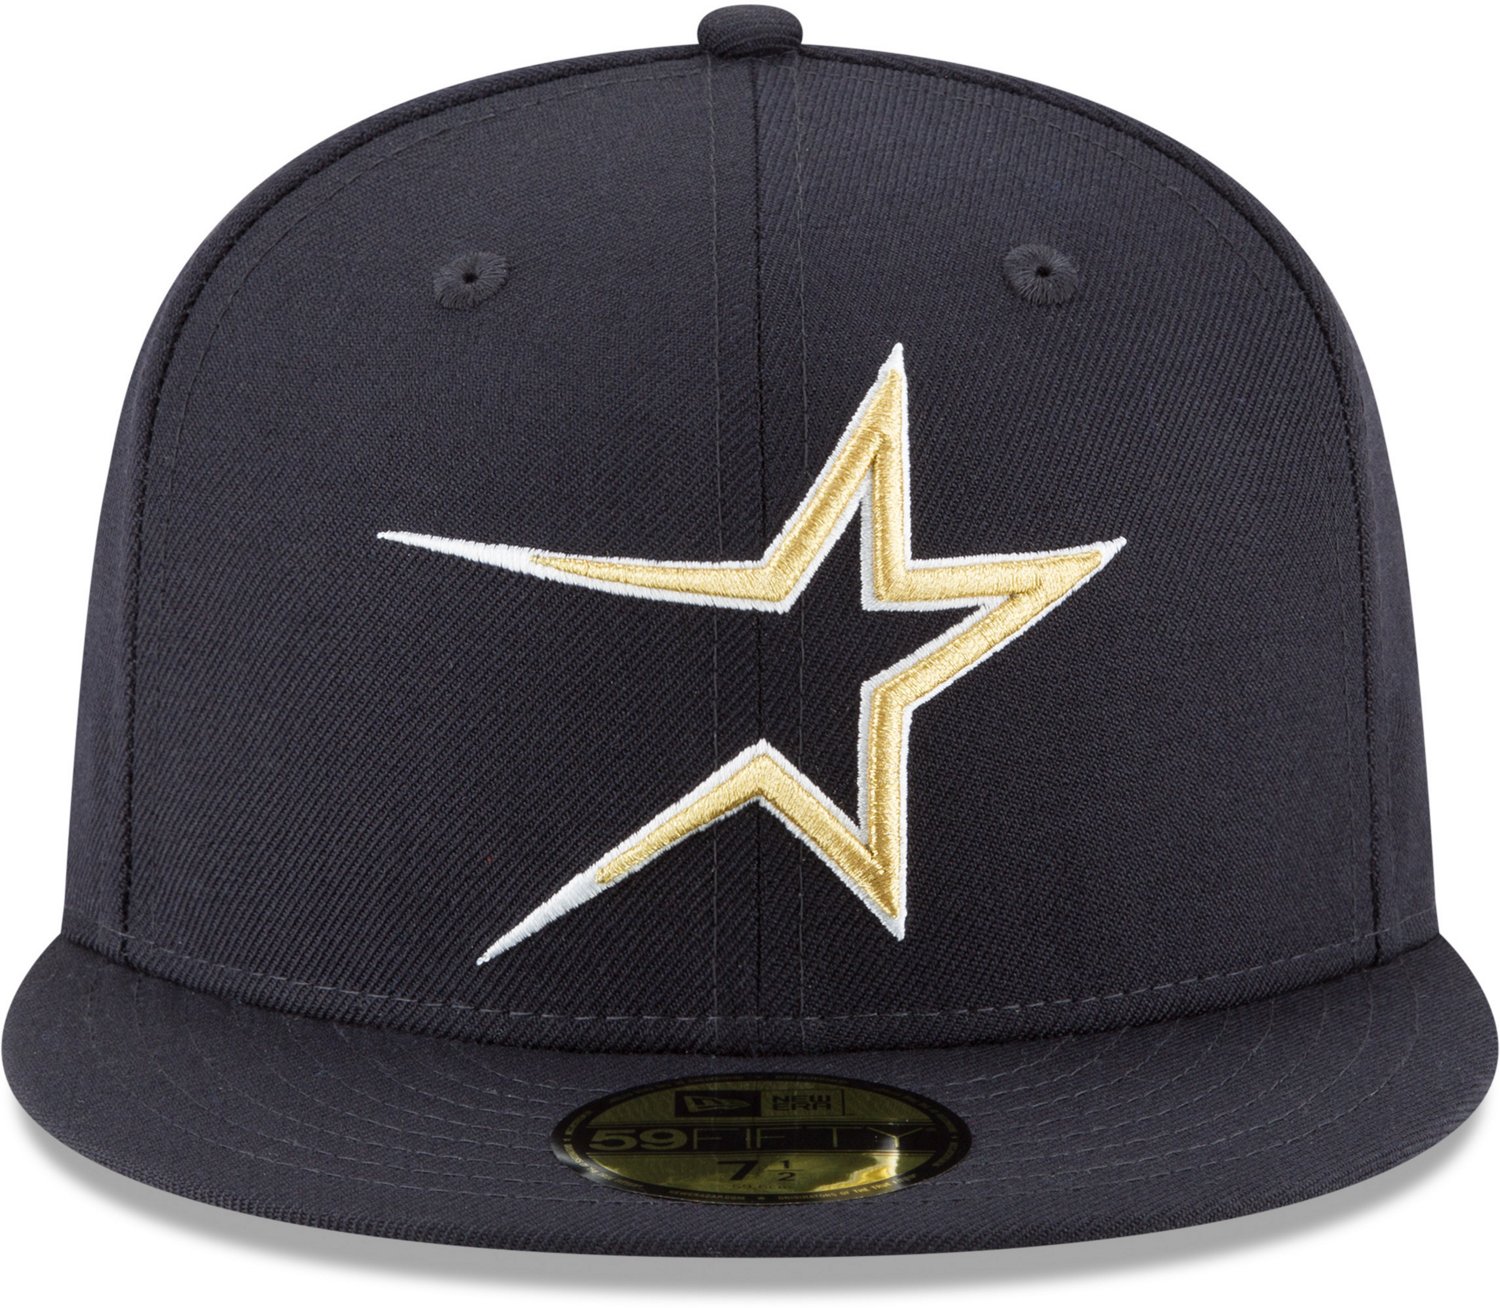 New Era Houston Astros